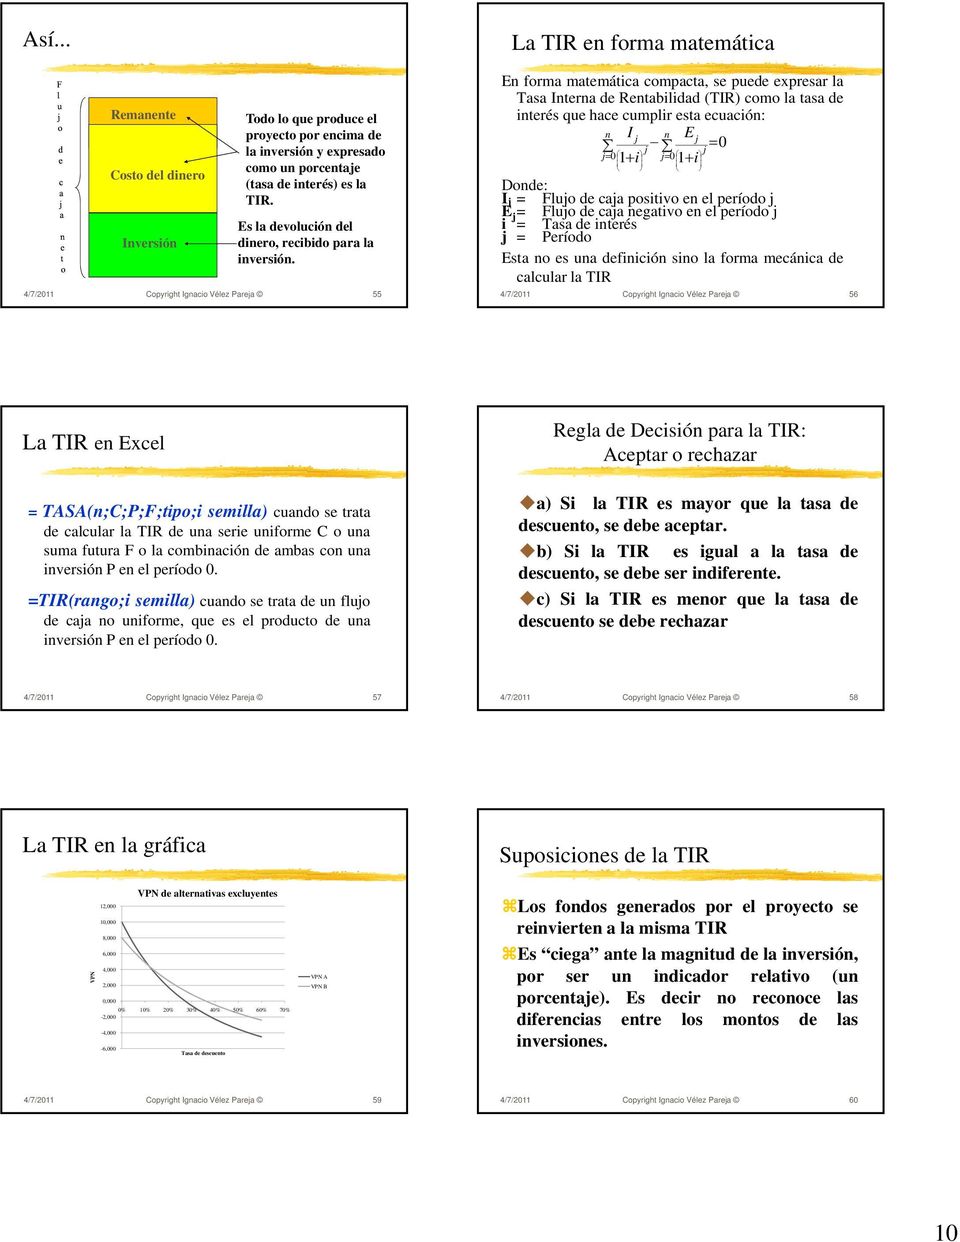 4/7/2011 Copyright Ignacio Vélez Parea 55 La TIR en forma matemática En forma matemática compacta, se puede expresar la Tasa Interna de Rentabilidad (TIR) como la tasa de interés que hace cumplir